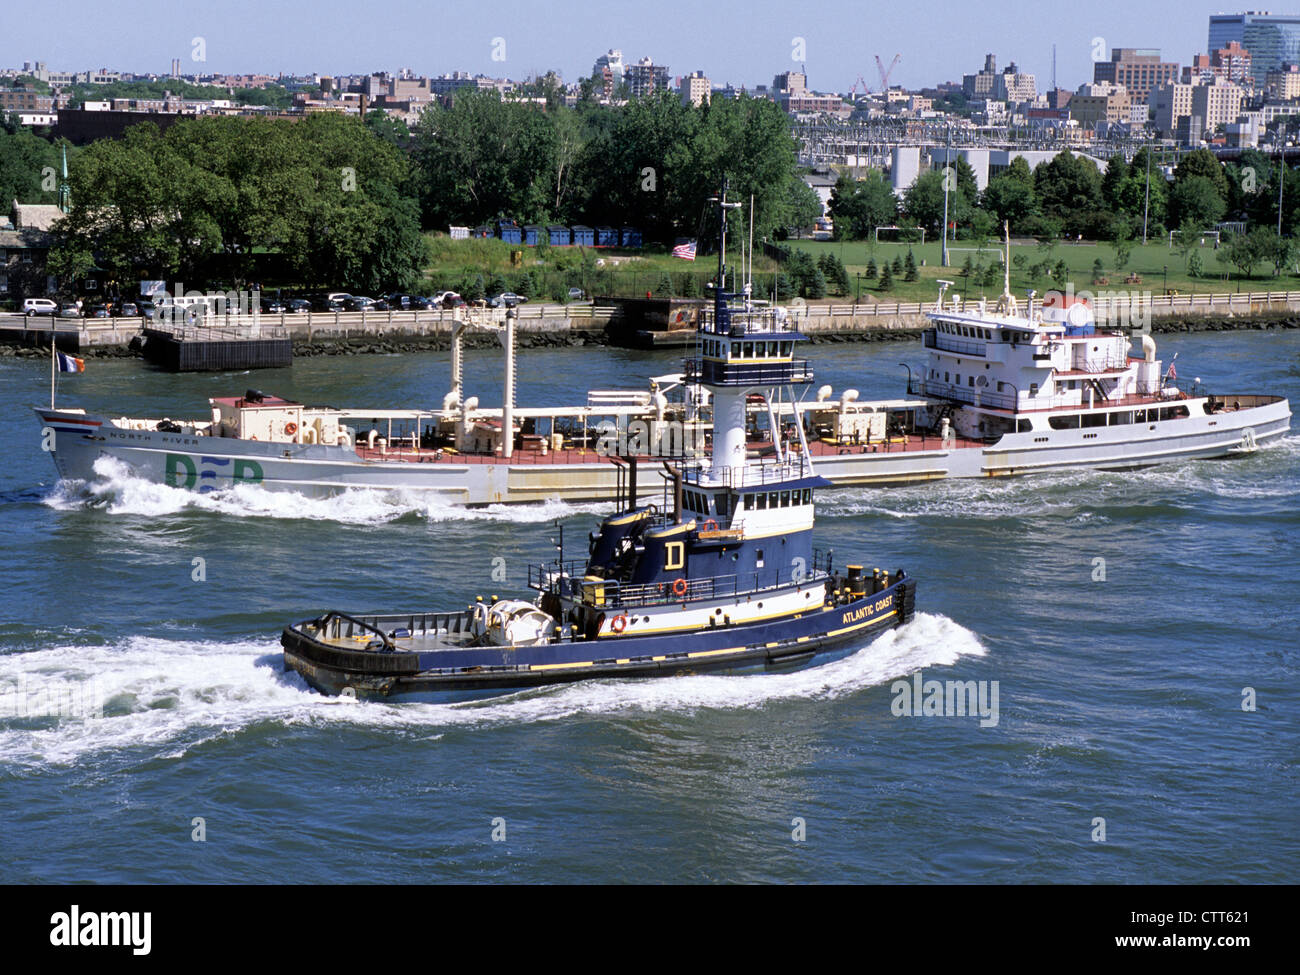 Rimorchiatore New York East River, passando per la nave del Dipartimento di protezione ambientale. Traffico fluviale. New York City, navi e rimorchiatori traffico fluviale, Stati Uniti Foto Stock